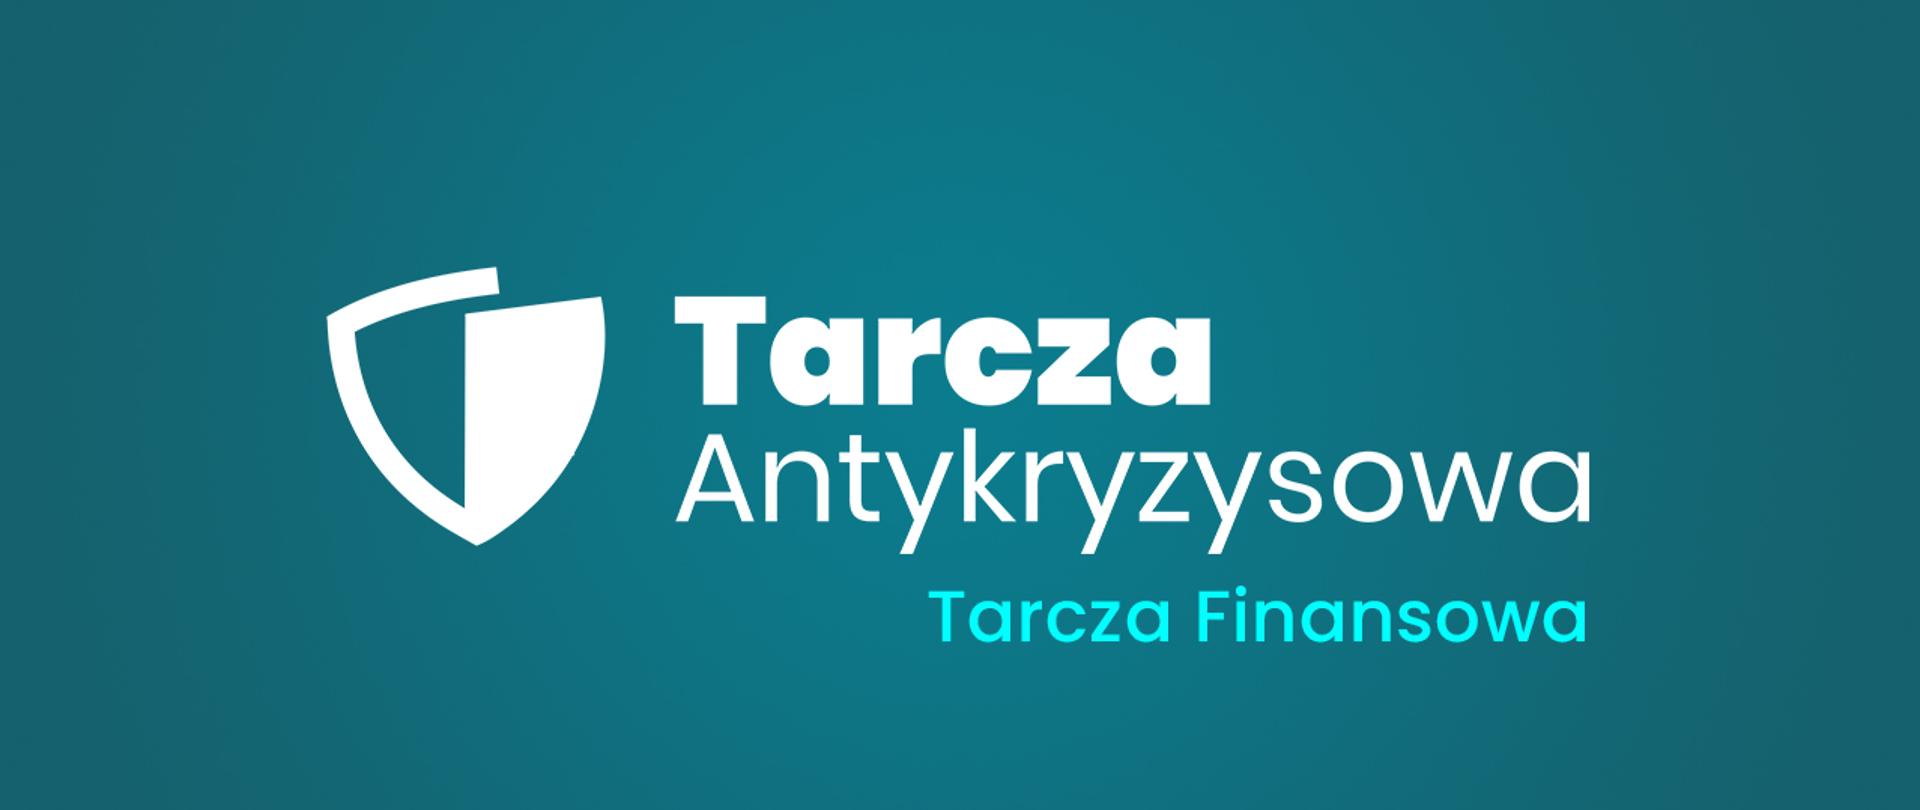 logo Tarcza antykryzysowa 